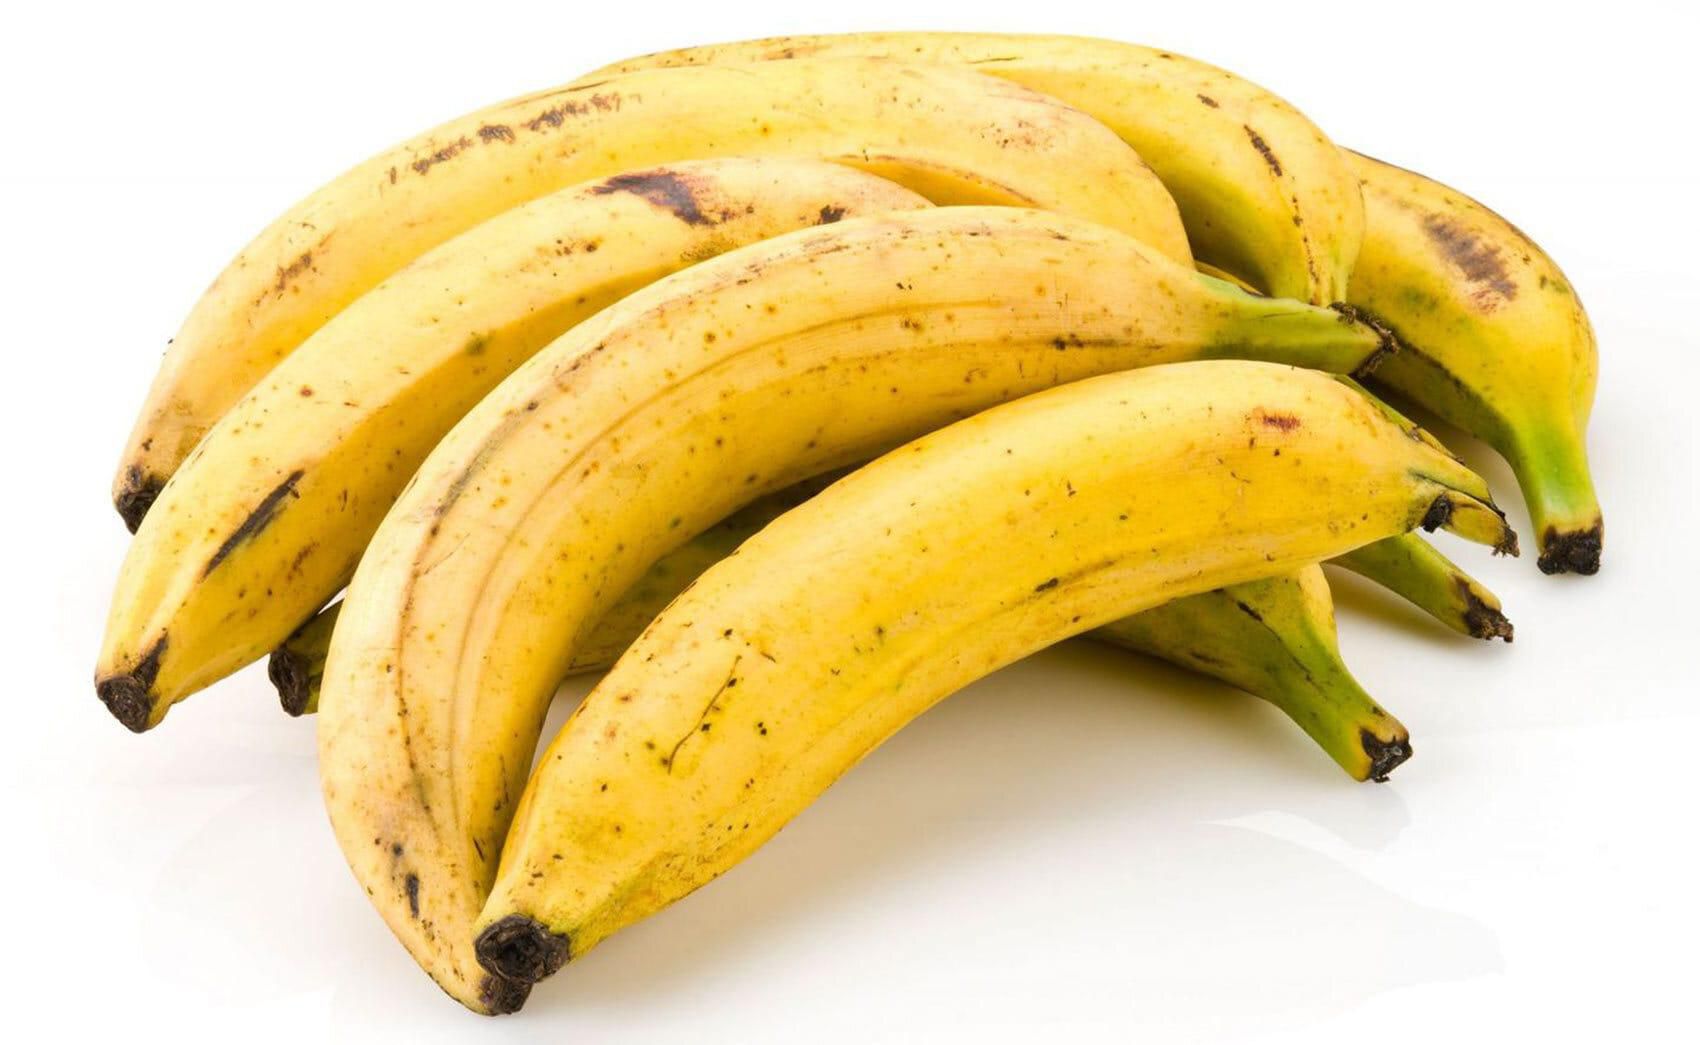 Balady Bananas